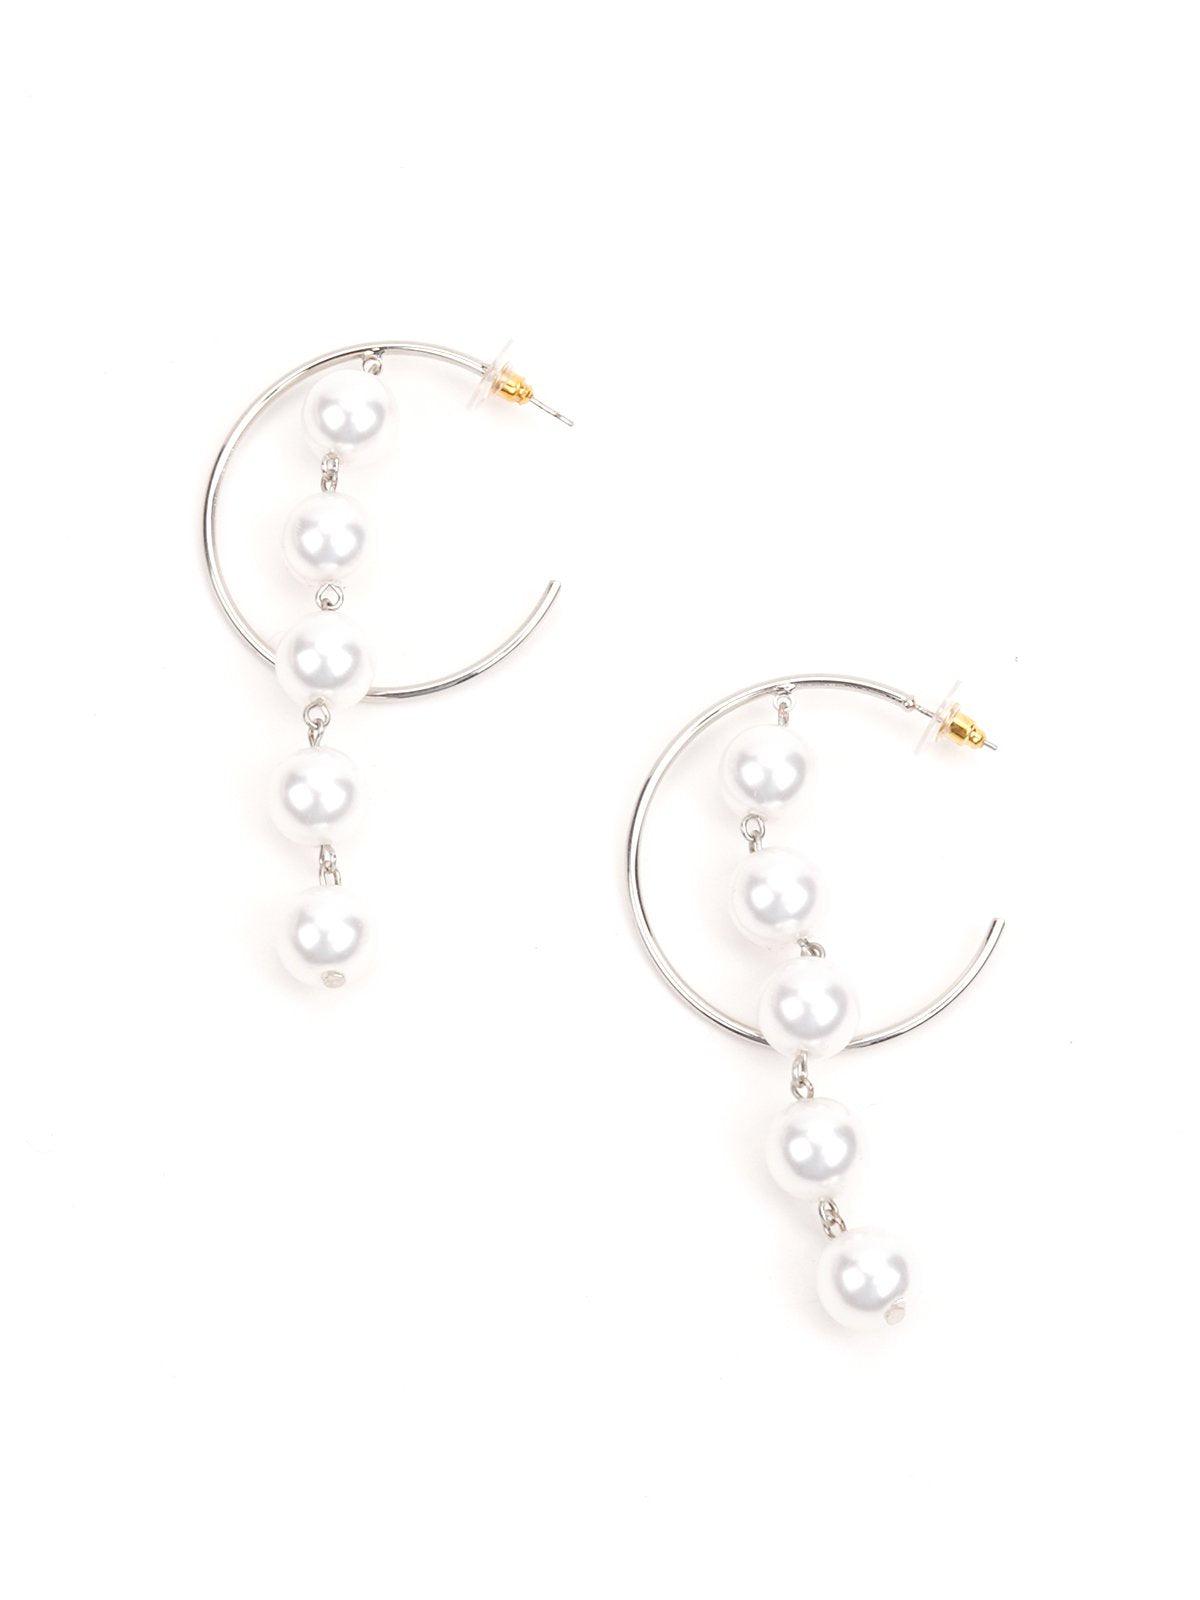 Women's Silver Hoop Earrings With Pearls - Odette